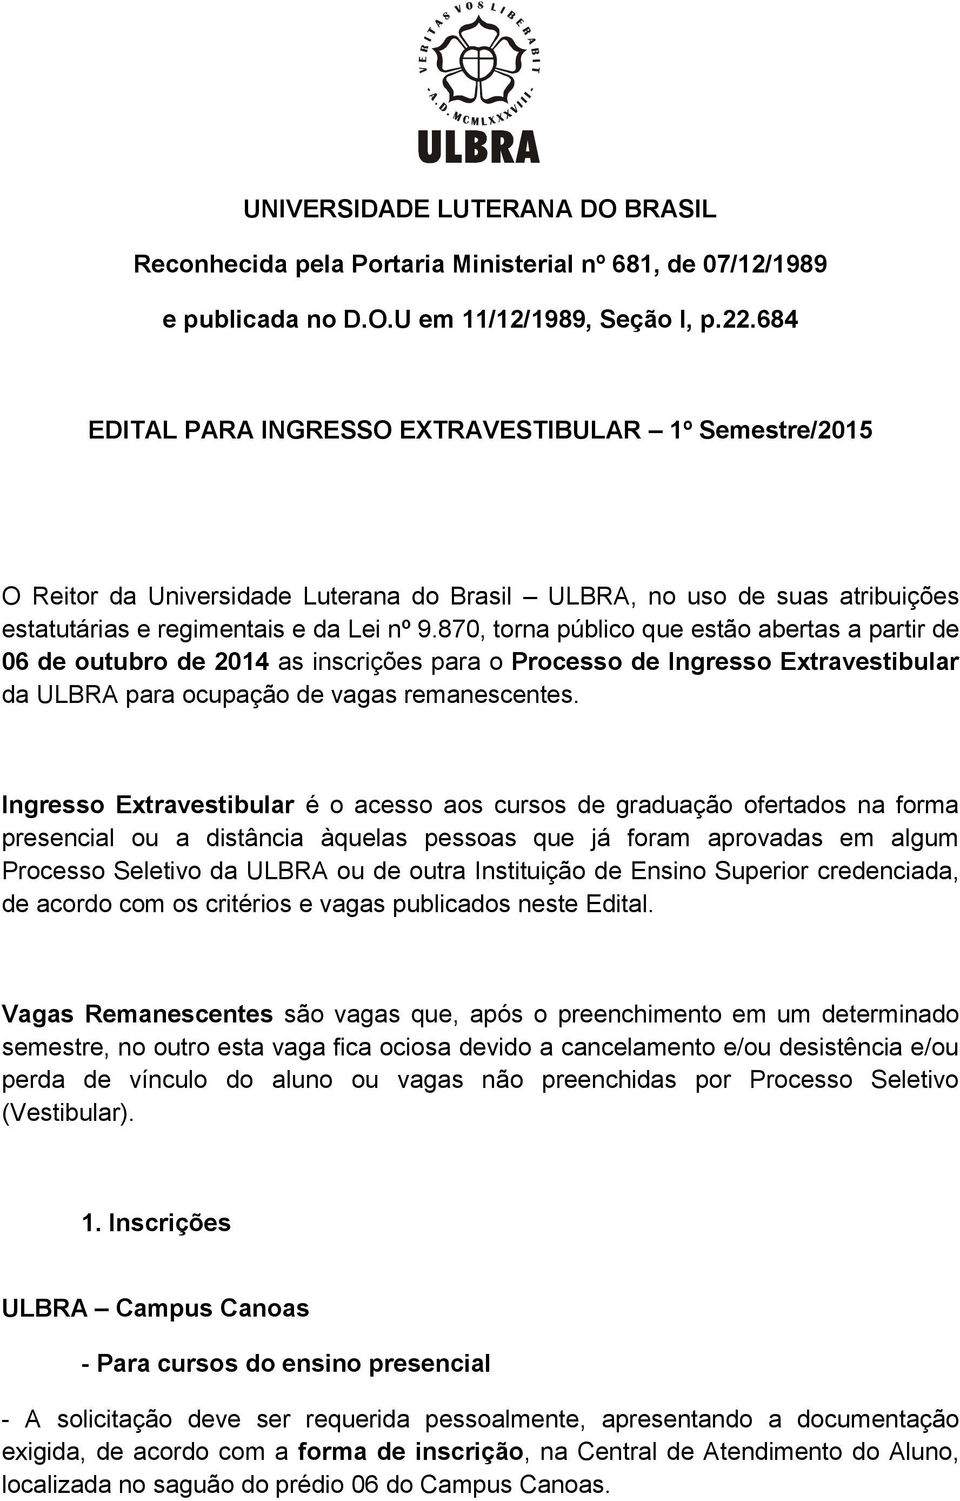 870, torna público que estão abertas a partir de 06 de outubro de 2014 as inscrições para o Processo de Ingresso Extravestibular da ULBRA para ocupação de vagas remanescentes.